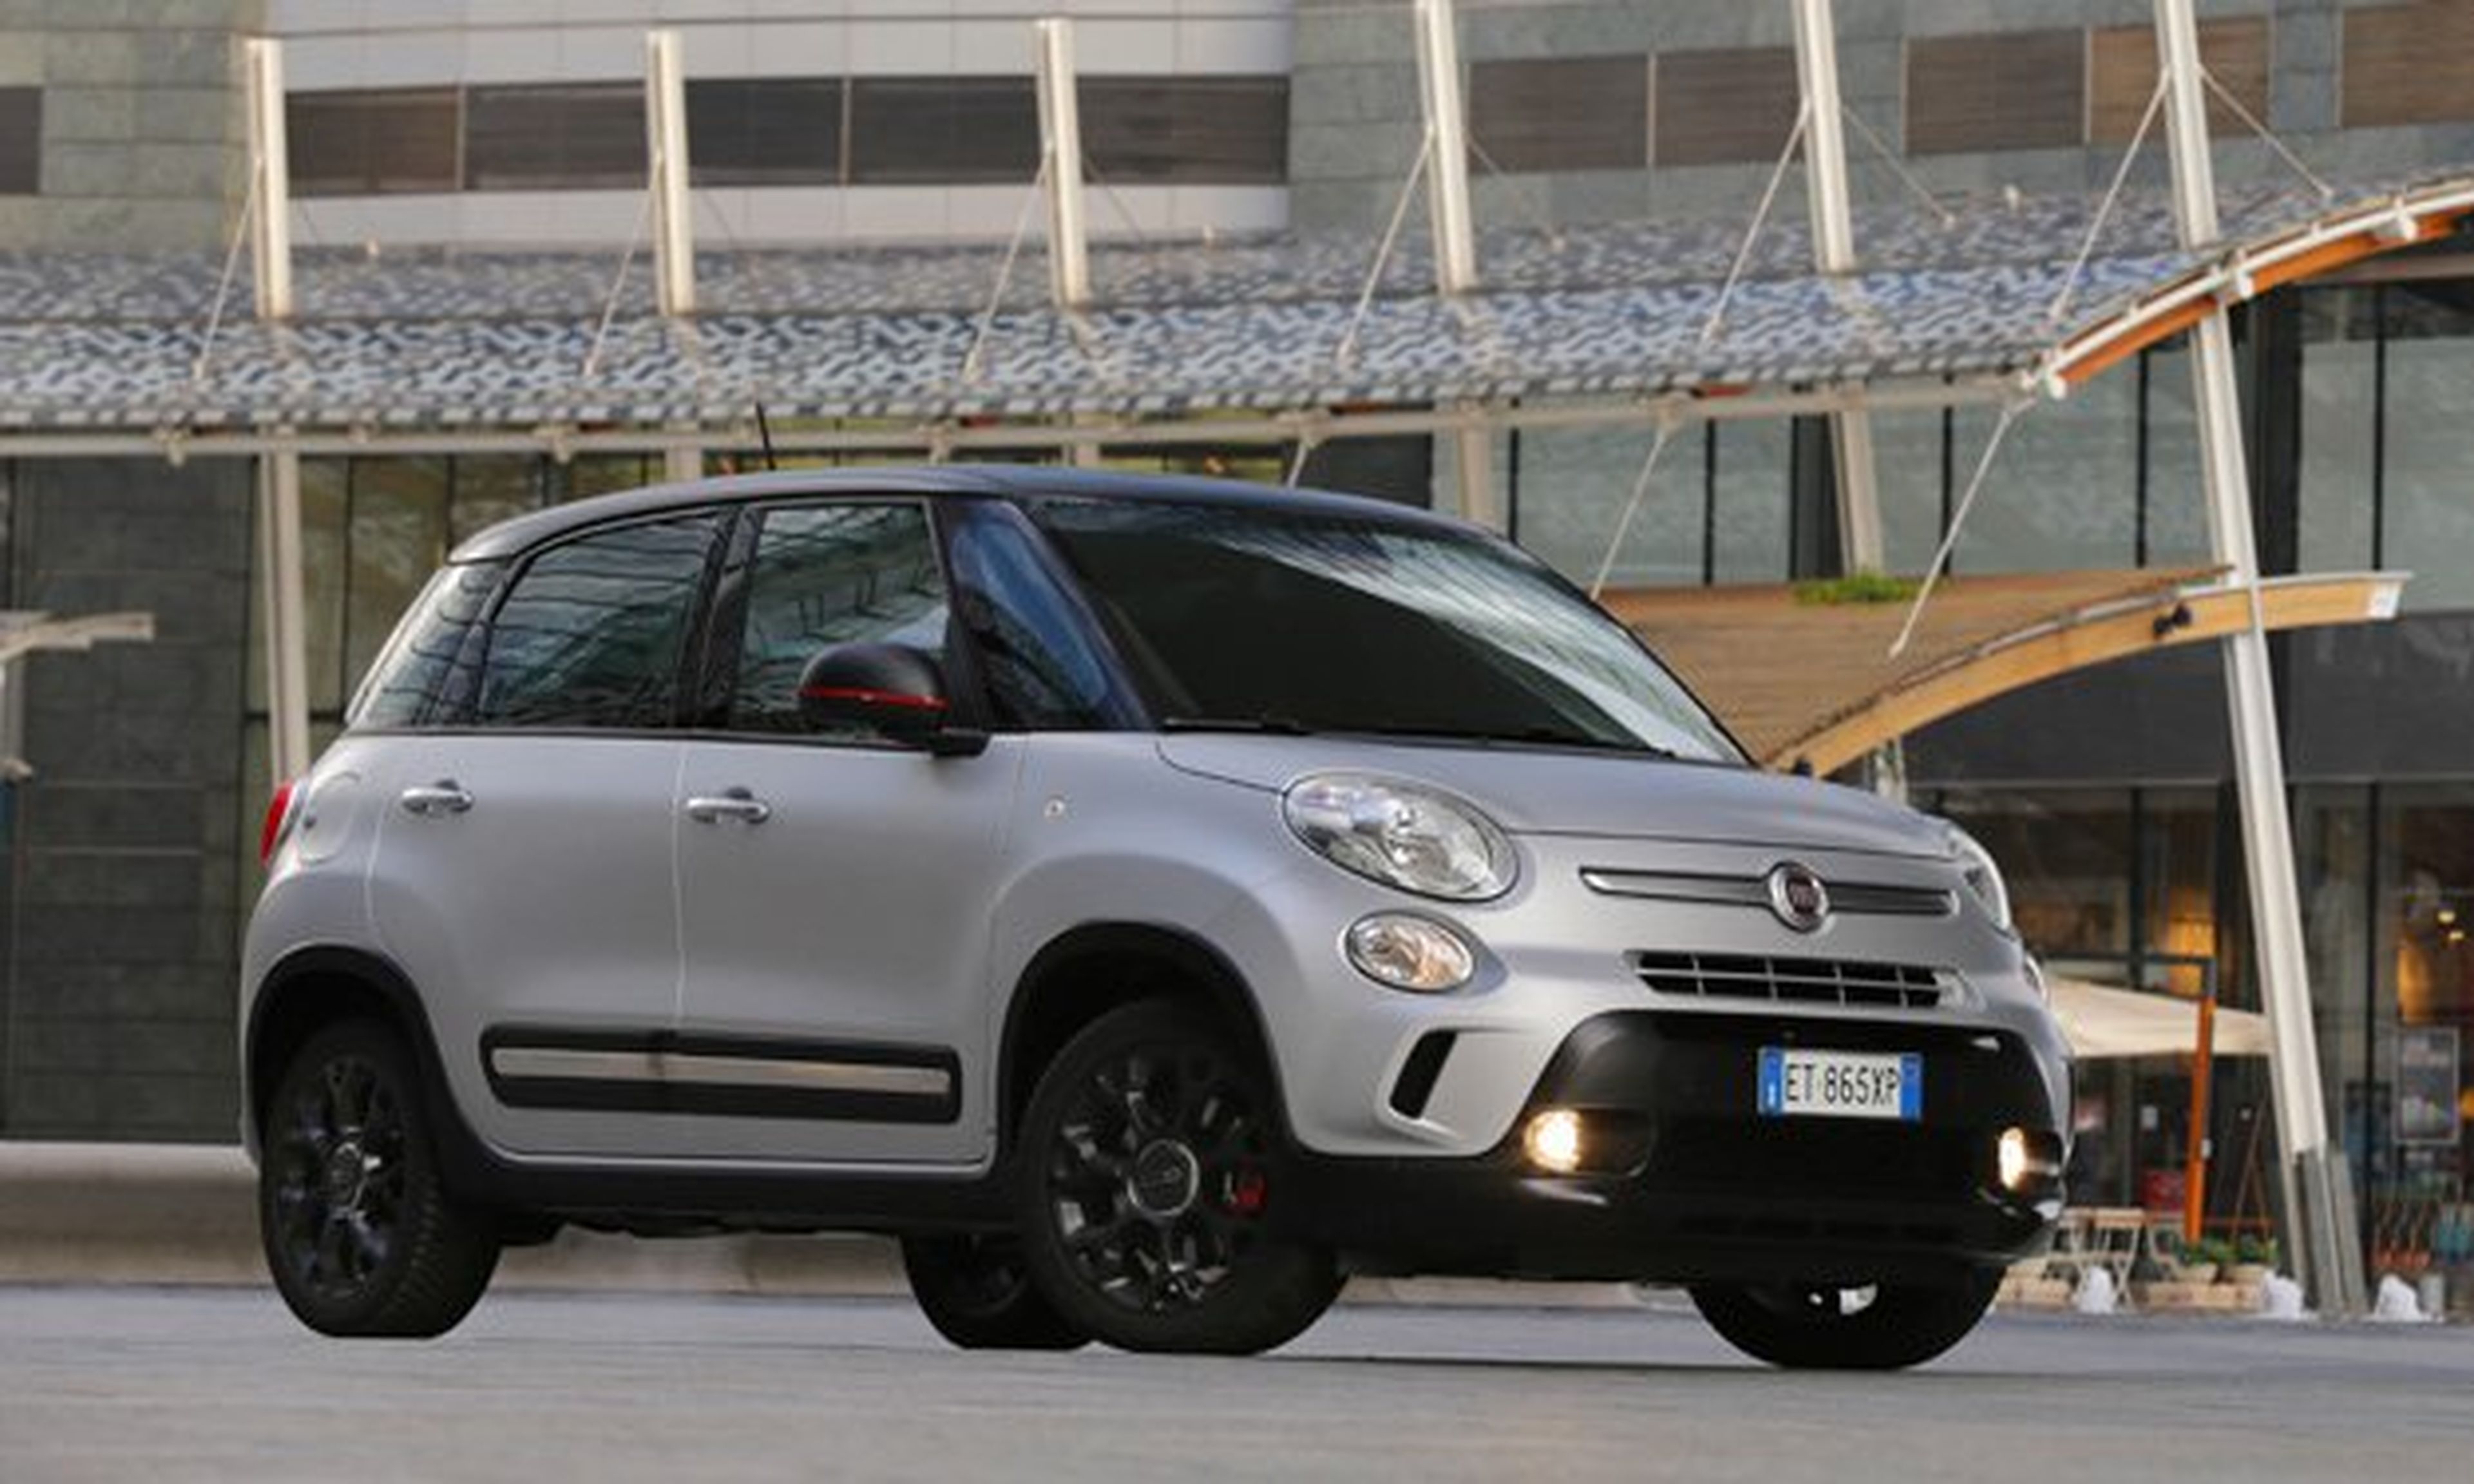 Fiat envuelve los coches extranjeros de sus empleados